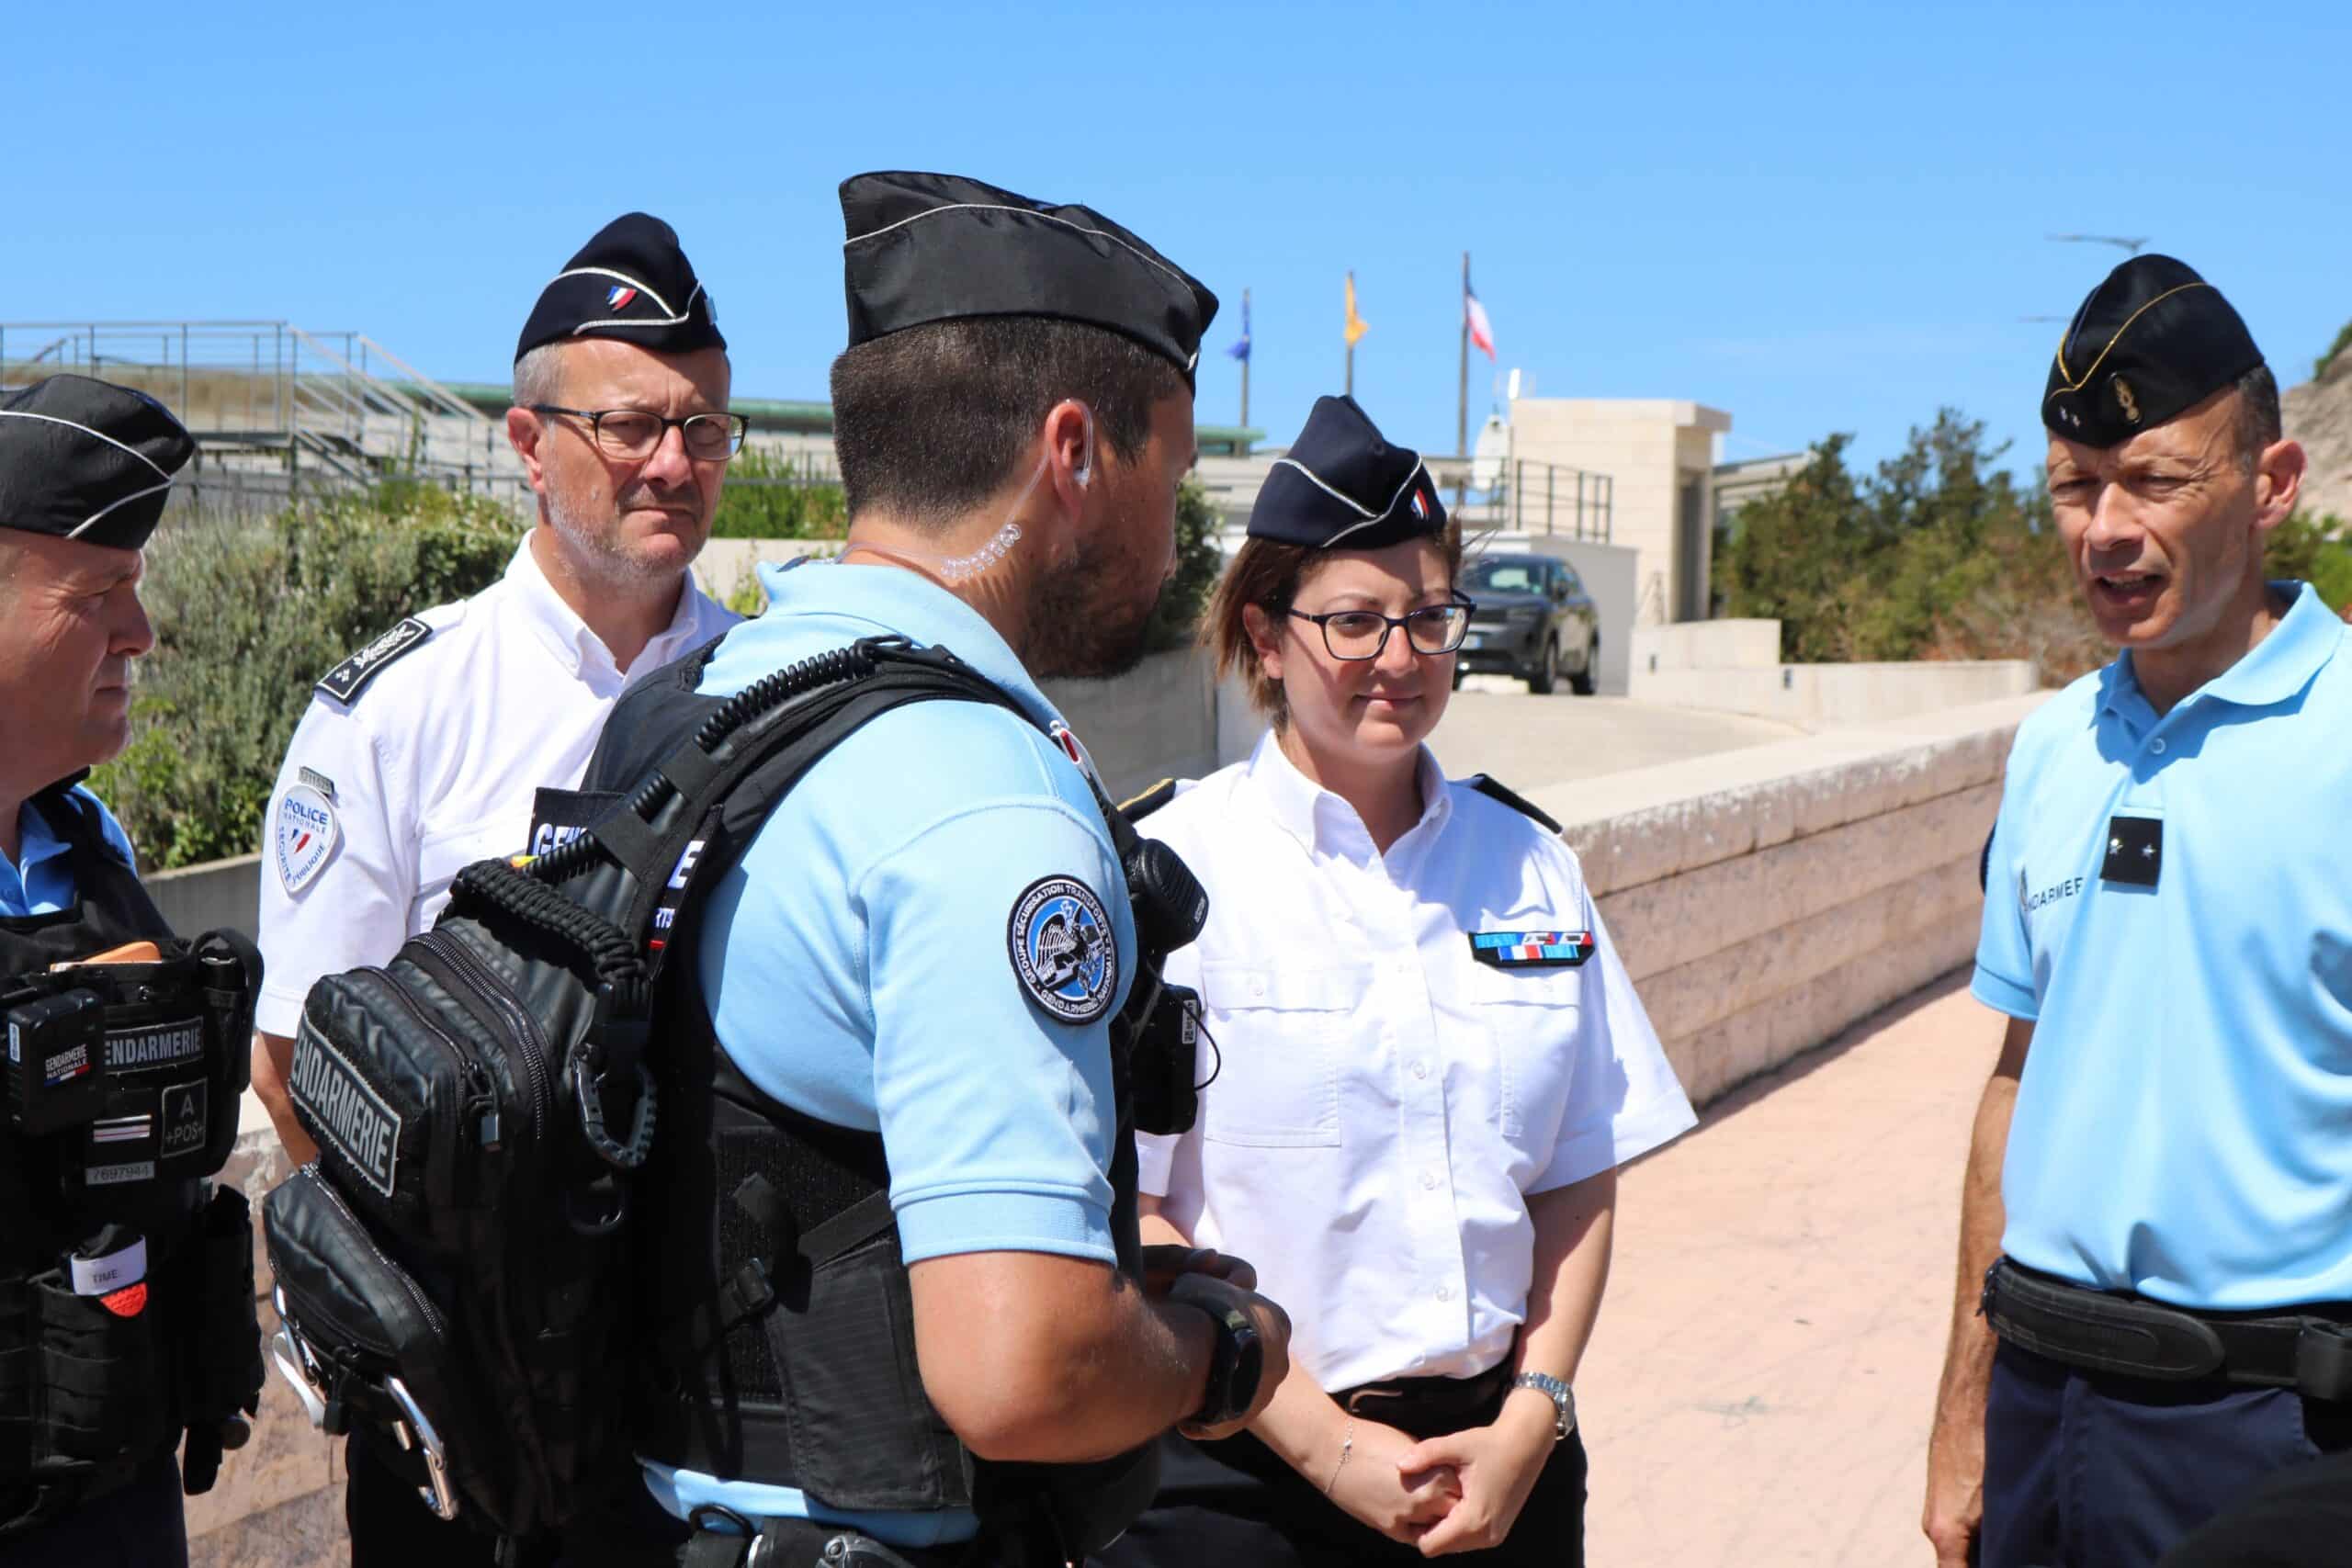 gendarmes, La préfecture de police teste son nouveau dispositif de sécurité pour les grands événements, Made in Marseille